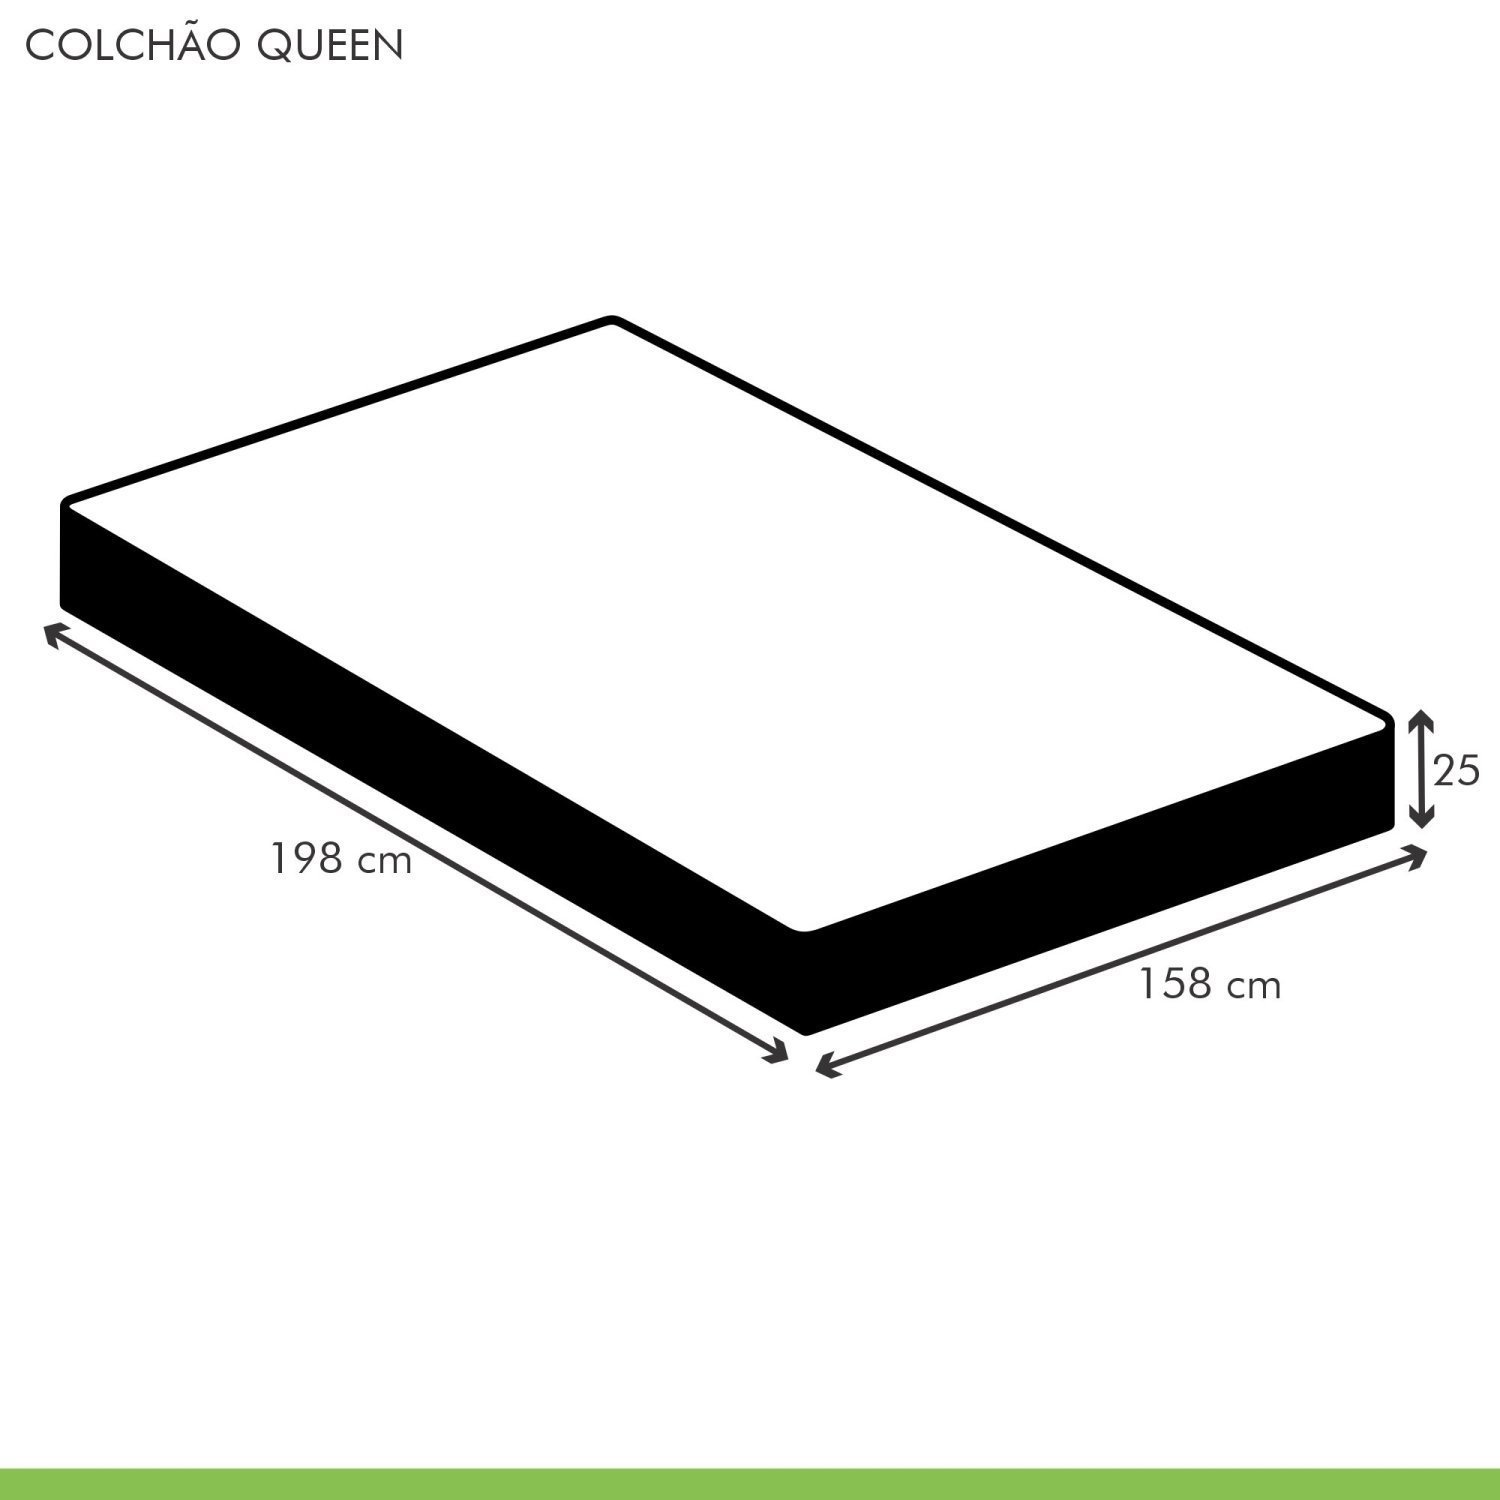 Colchão Queen Unique D33 Duoface 25x158x198cm  - 5